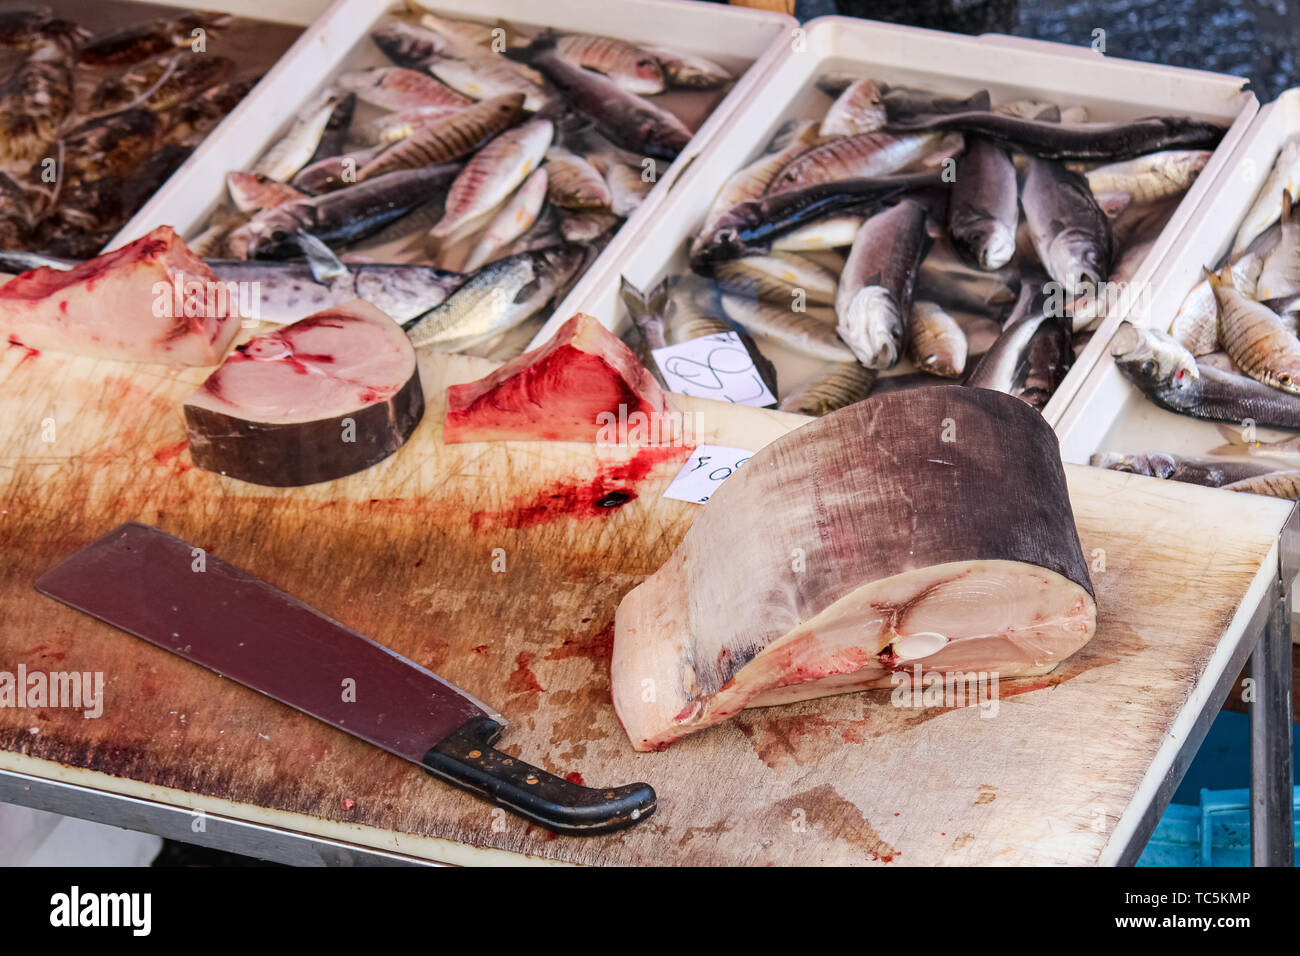 Detail von geschnittenen tote Fische auf einem Holztisch mit großen Cleaver. Andere tote Fische unscharf im Hintergrund. Tierschutz Konzept. Angeln, Wilderei, illegaler Jagd. Globales Problem. Stockfoto